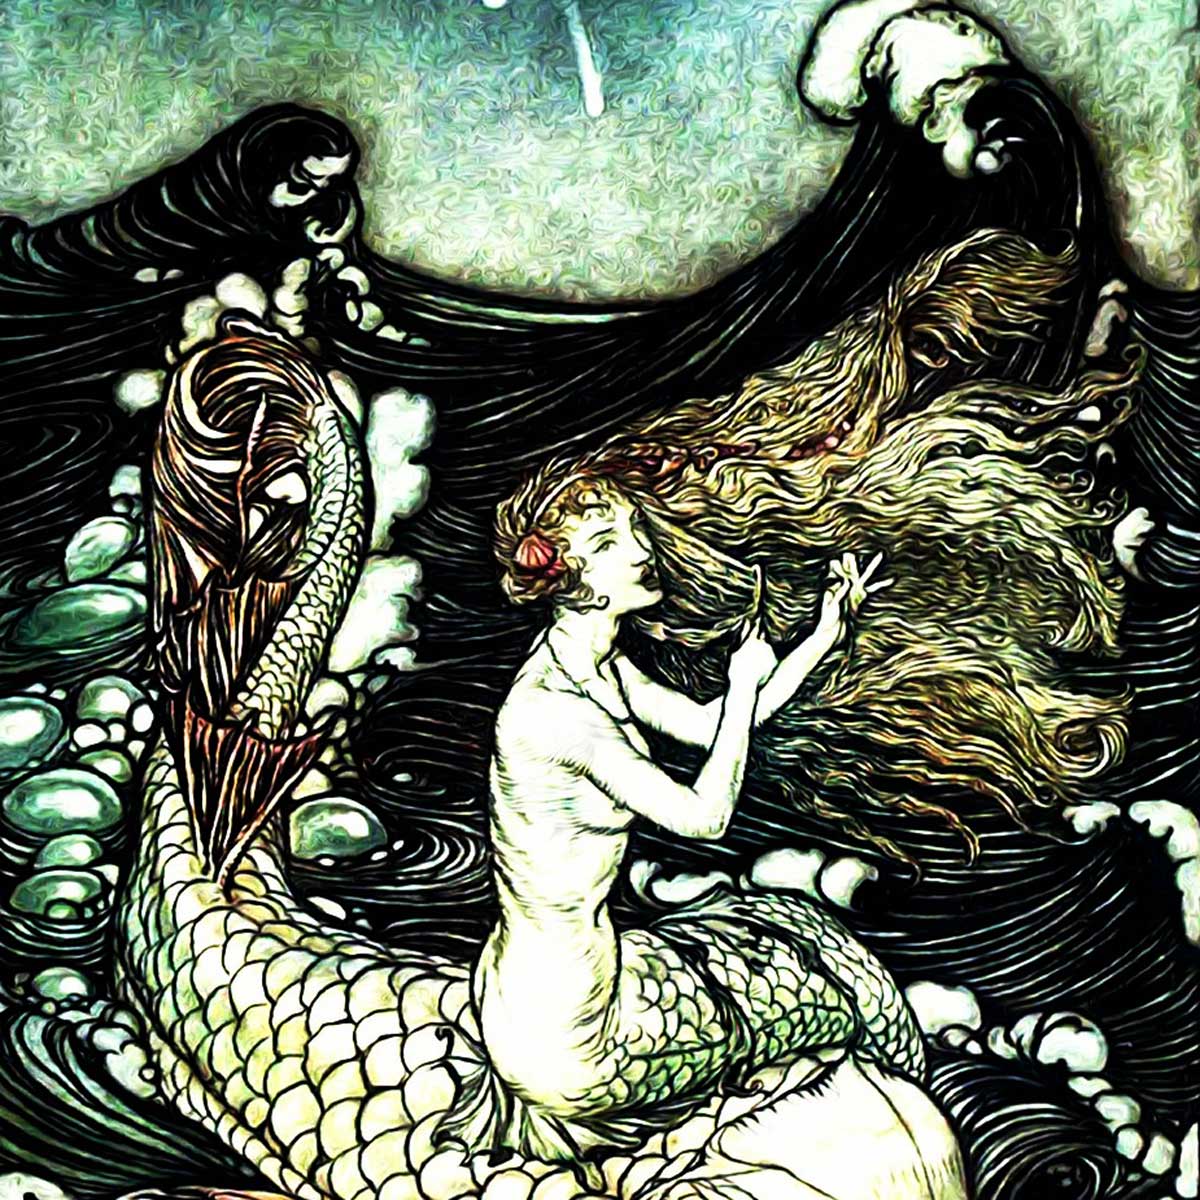 La sirena es uno de los personajes que aparece en las distintas mitologías del mundo.